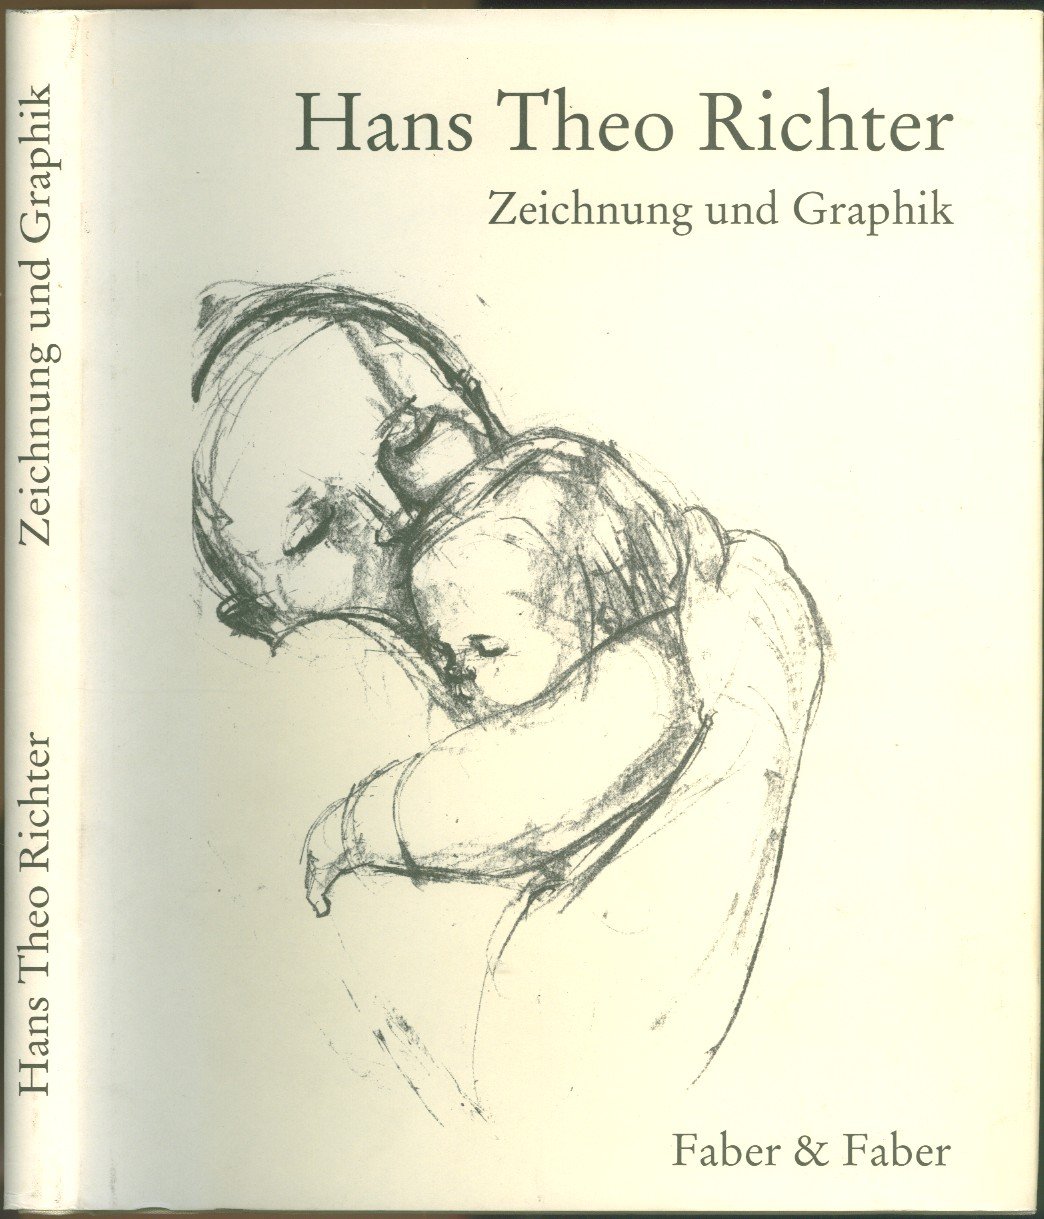 Hans Theo Richter, Zeichnung und Graphik“ (Hans Theo Richter